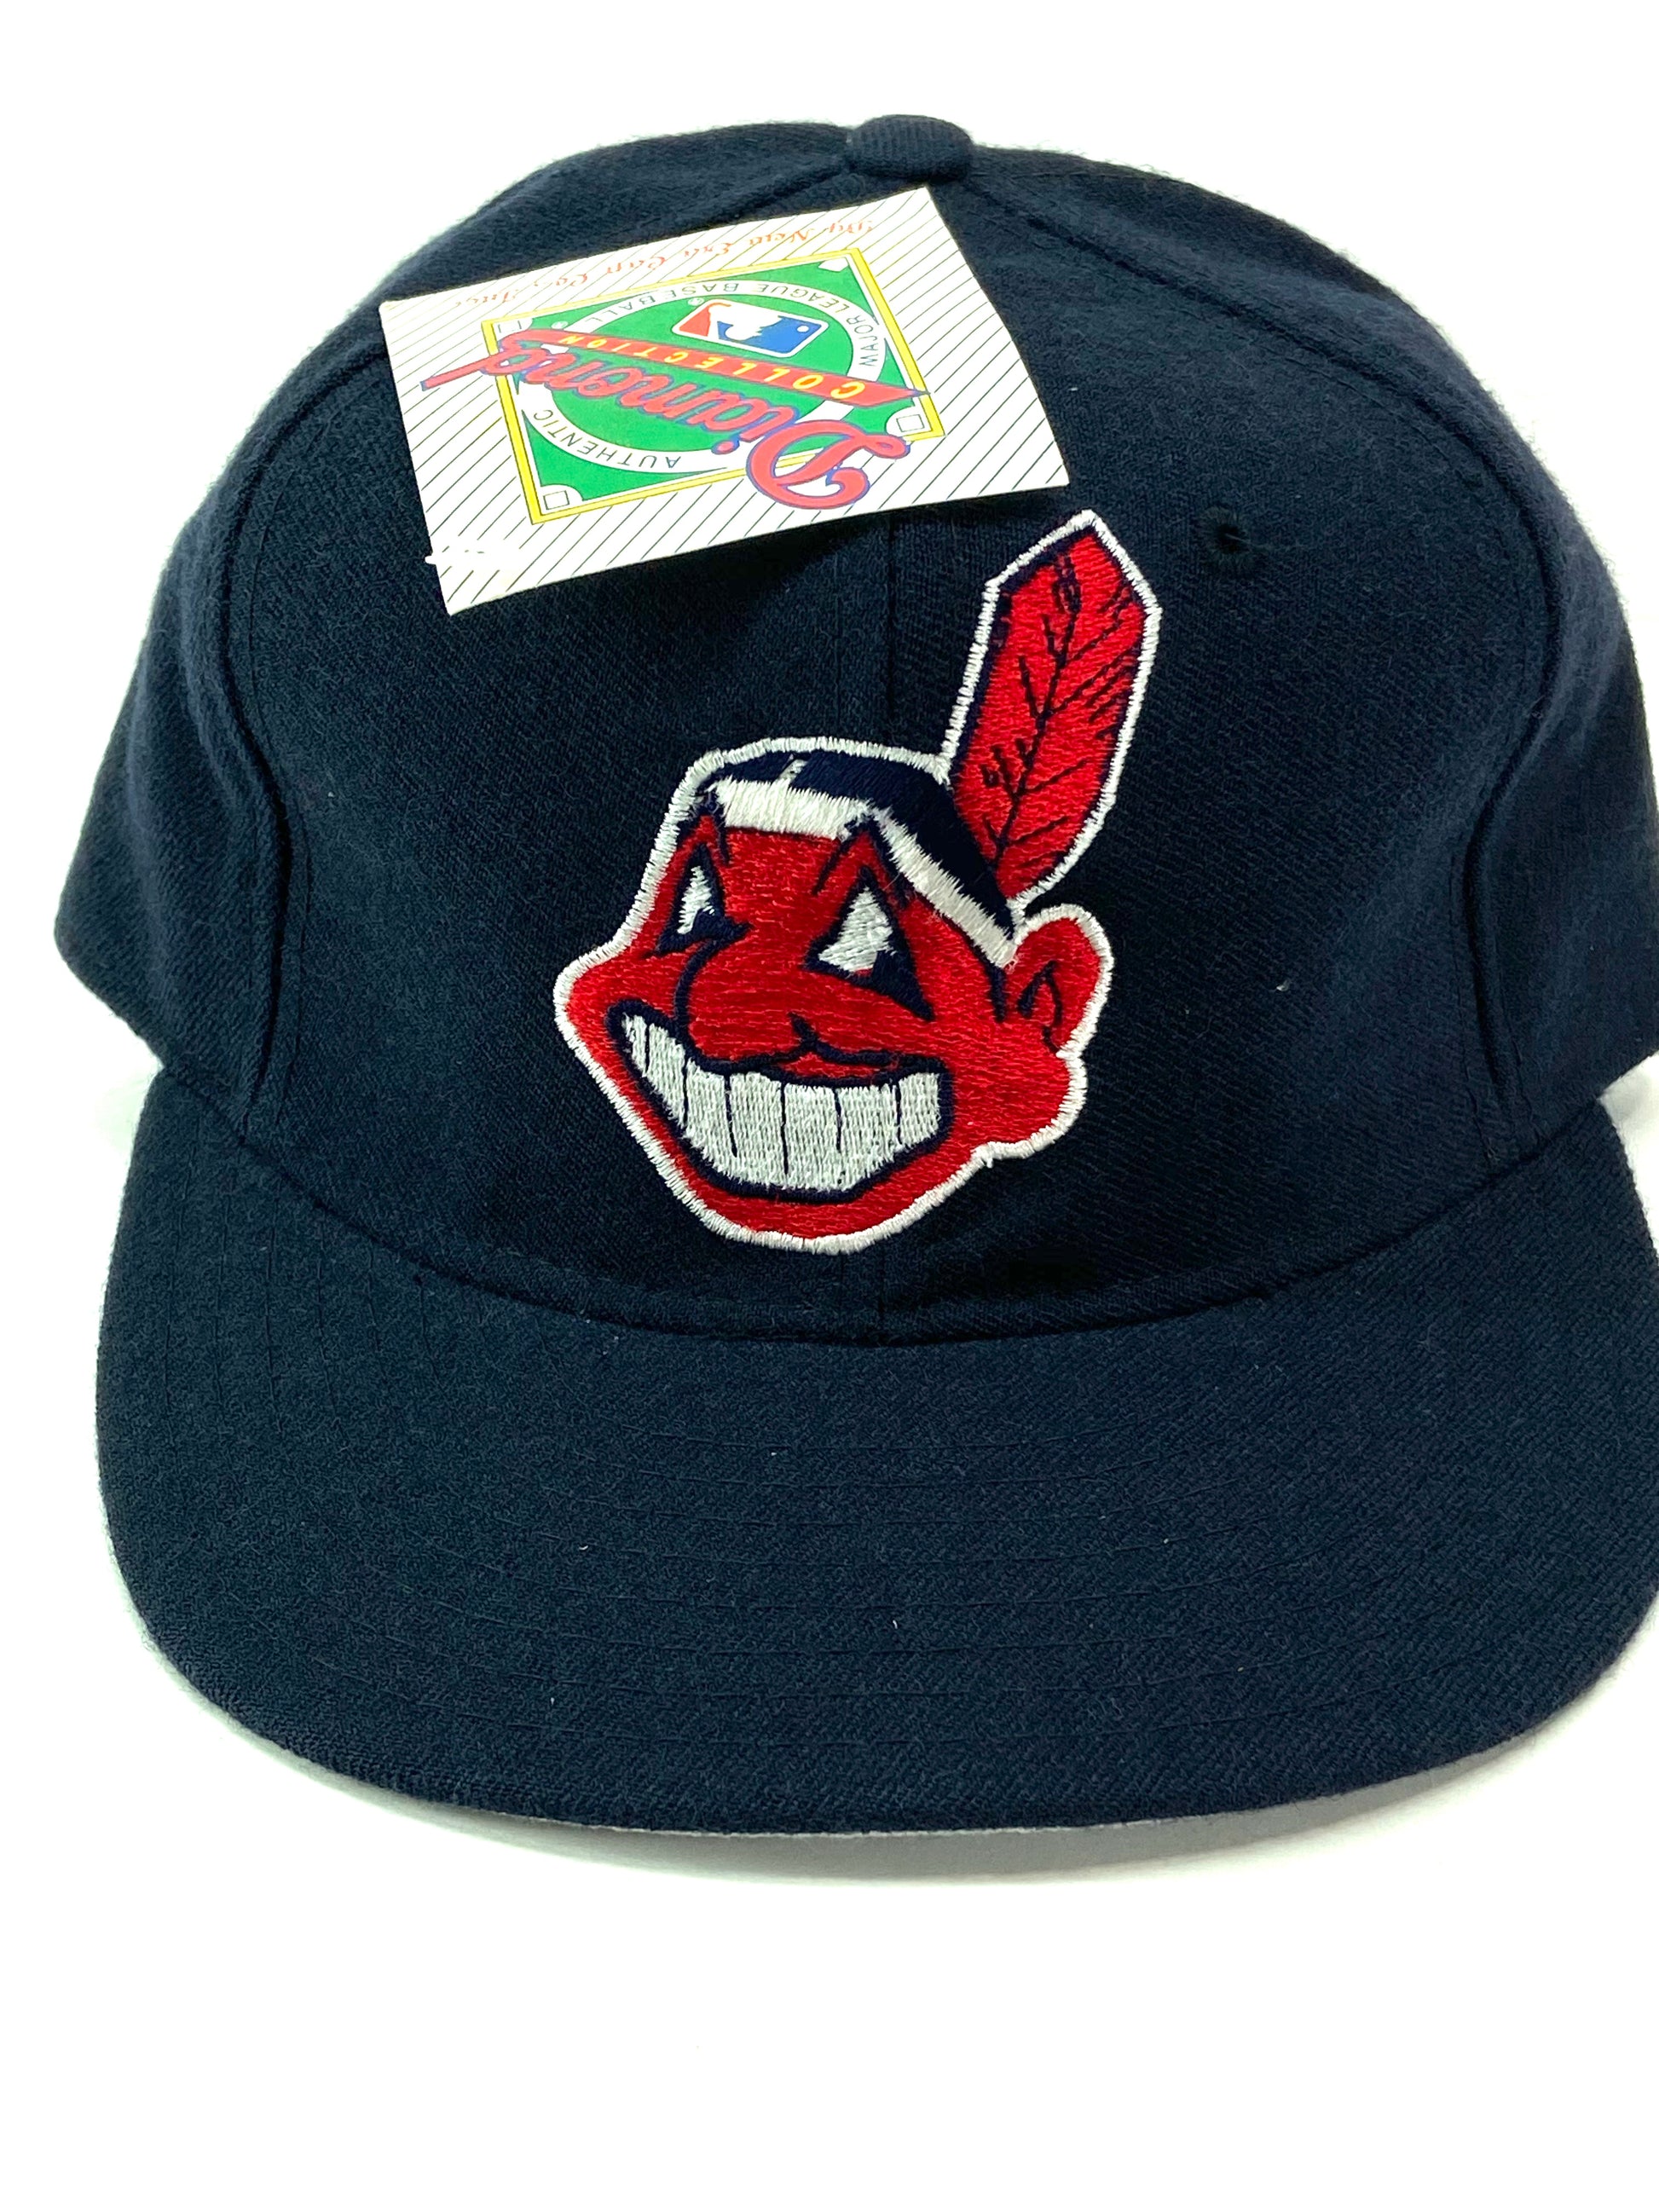 Cleveland Indians Chief Wahoo Logo Vintage 90s Original Visor Hat